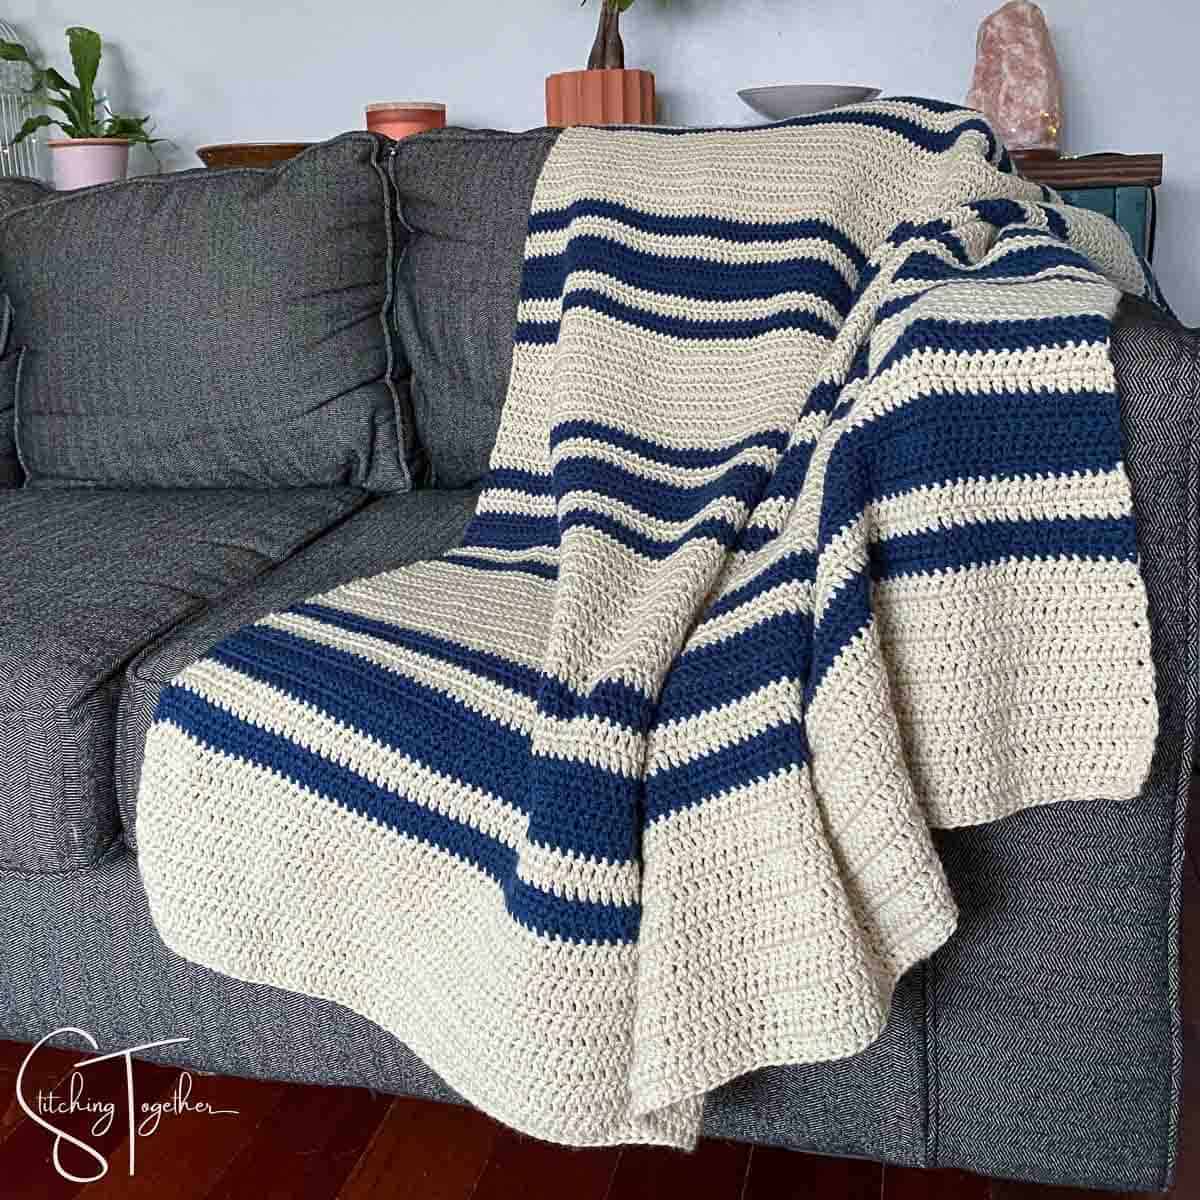 Super Easy Double Crochet Blanket Pattern